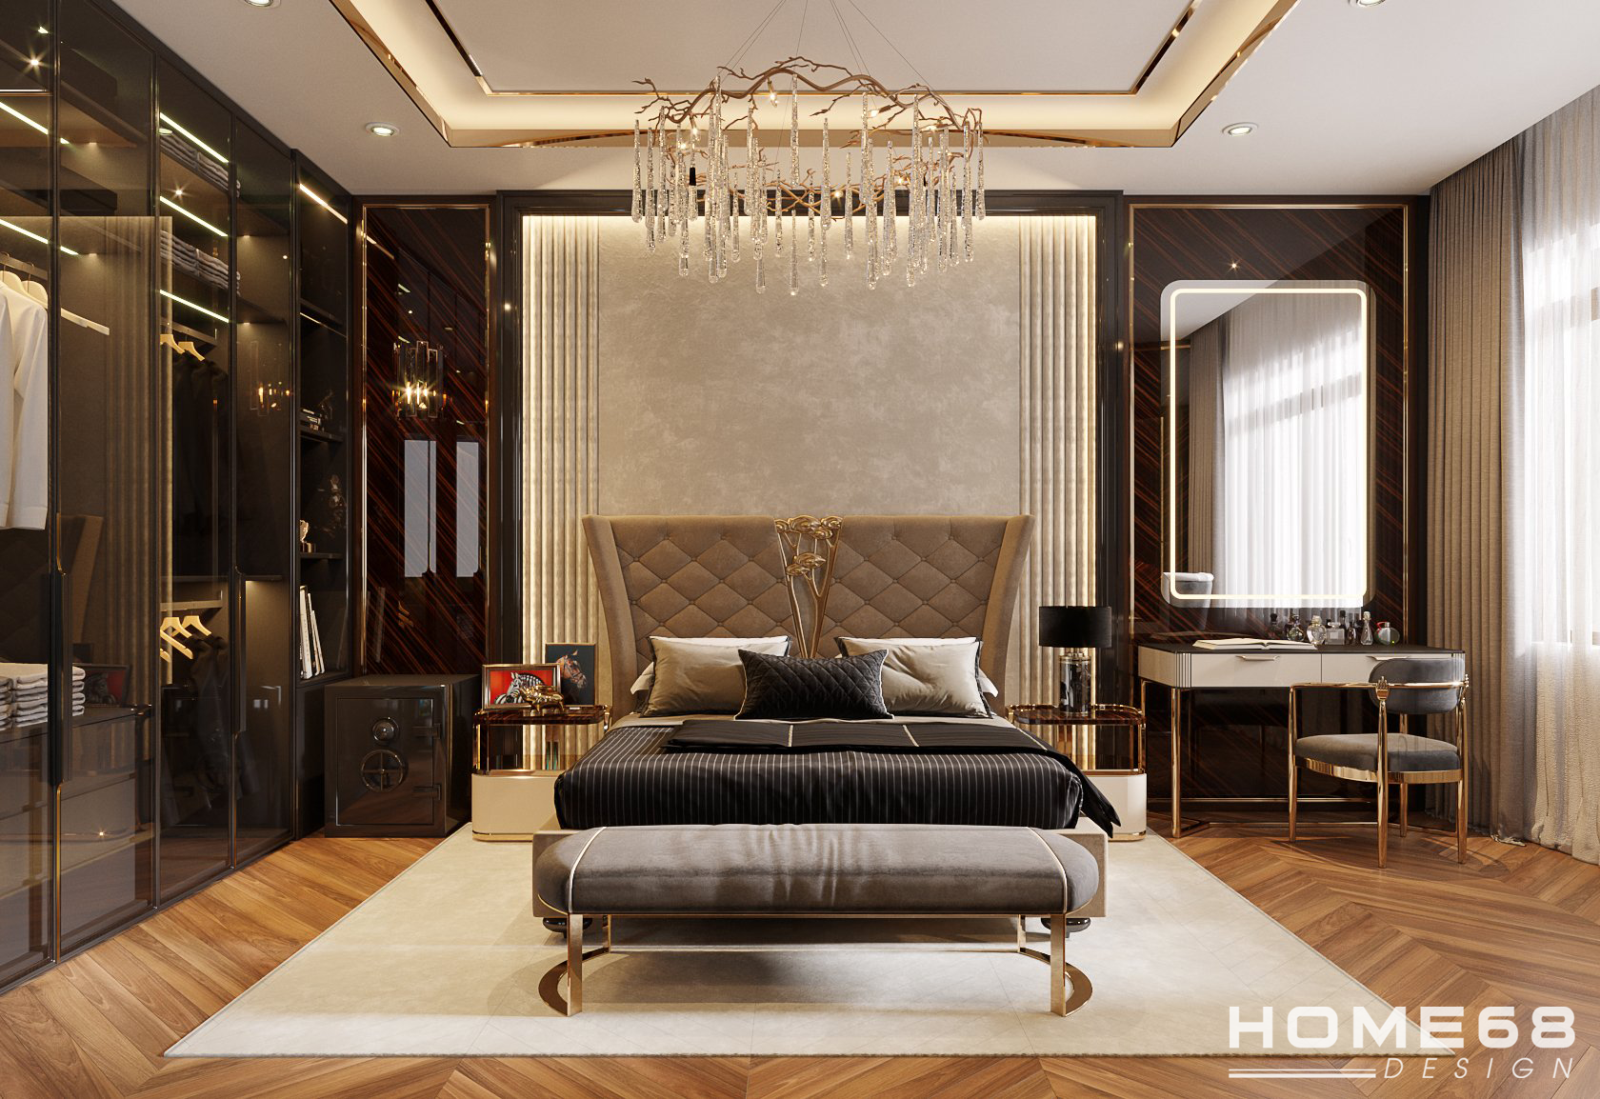 Thiết kế nội thất phòng ngủ hiện đại luxury độc đáo, cuốn hút- HOME68